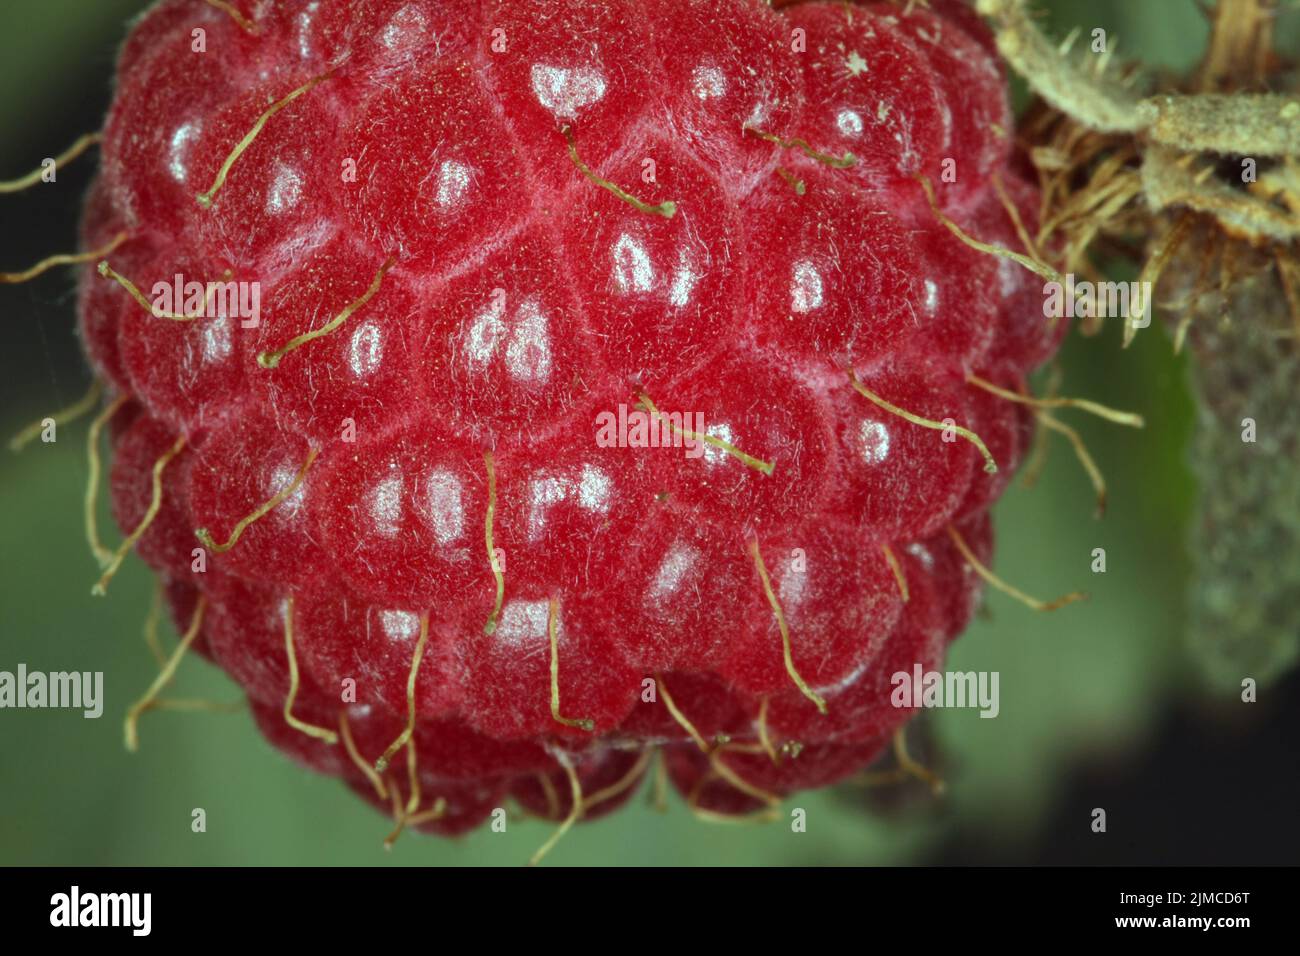 Reife Frucht der Waldhimbeere (Rubus idaeus). Waldhimbeeren sammeln man gerne für die Herstellung von Himbeersaft und Himbeerkonfitüre. Kleinschmalkal Stockfoto